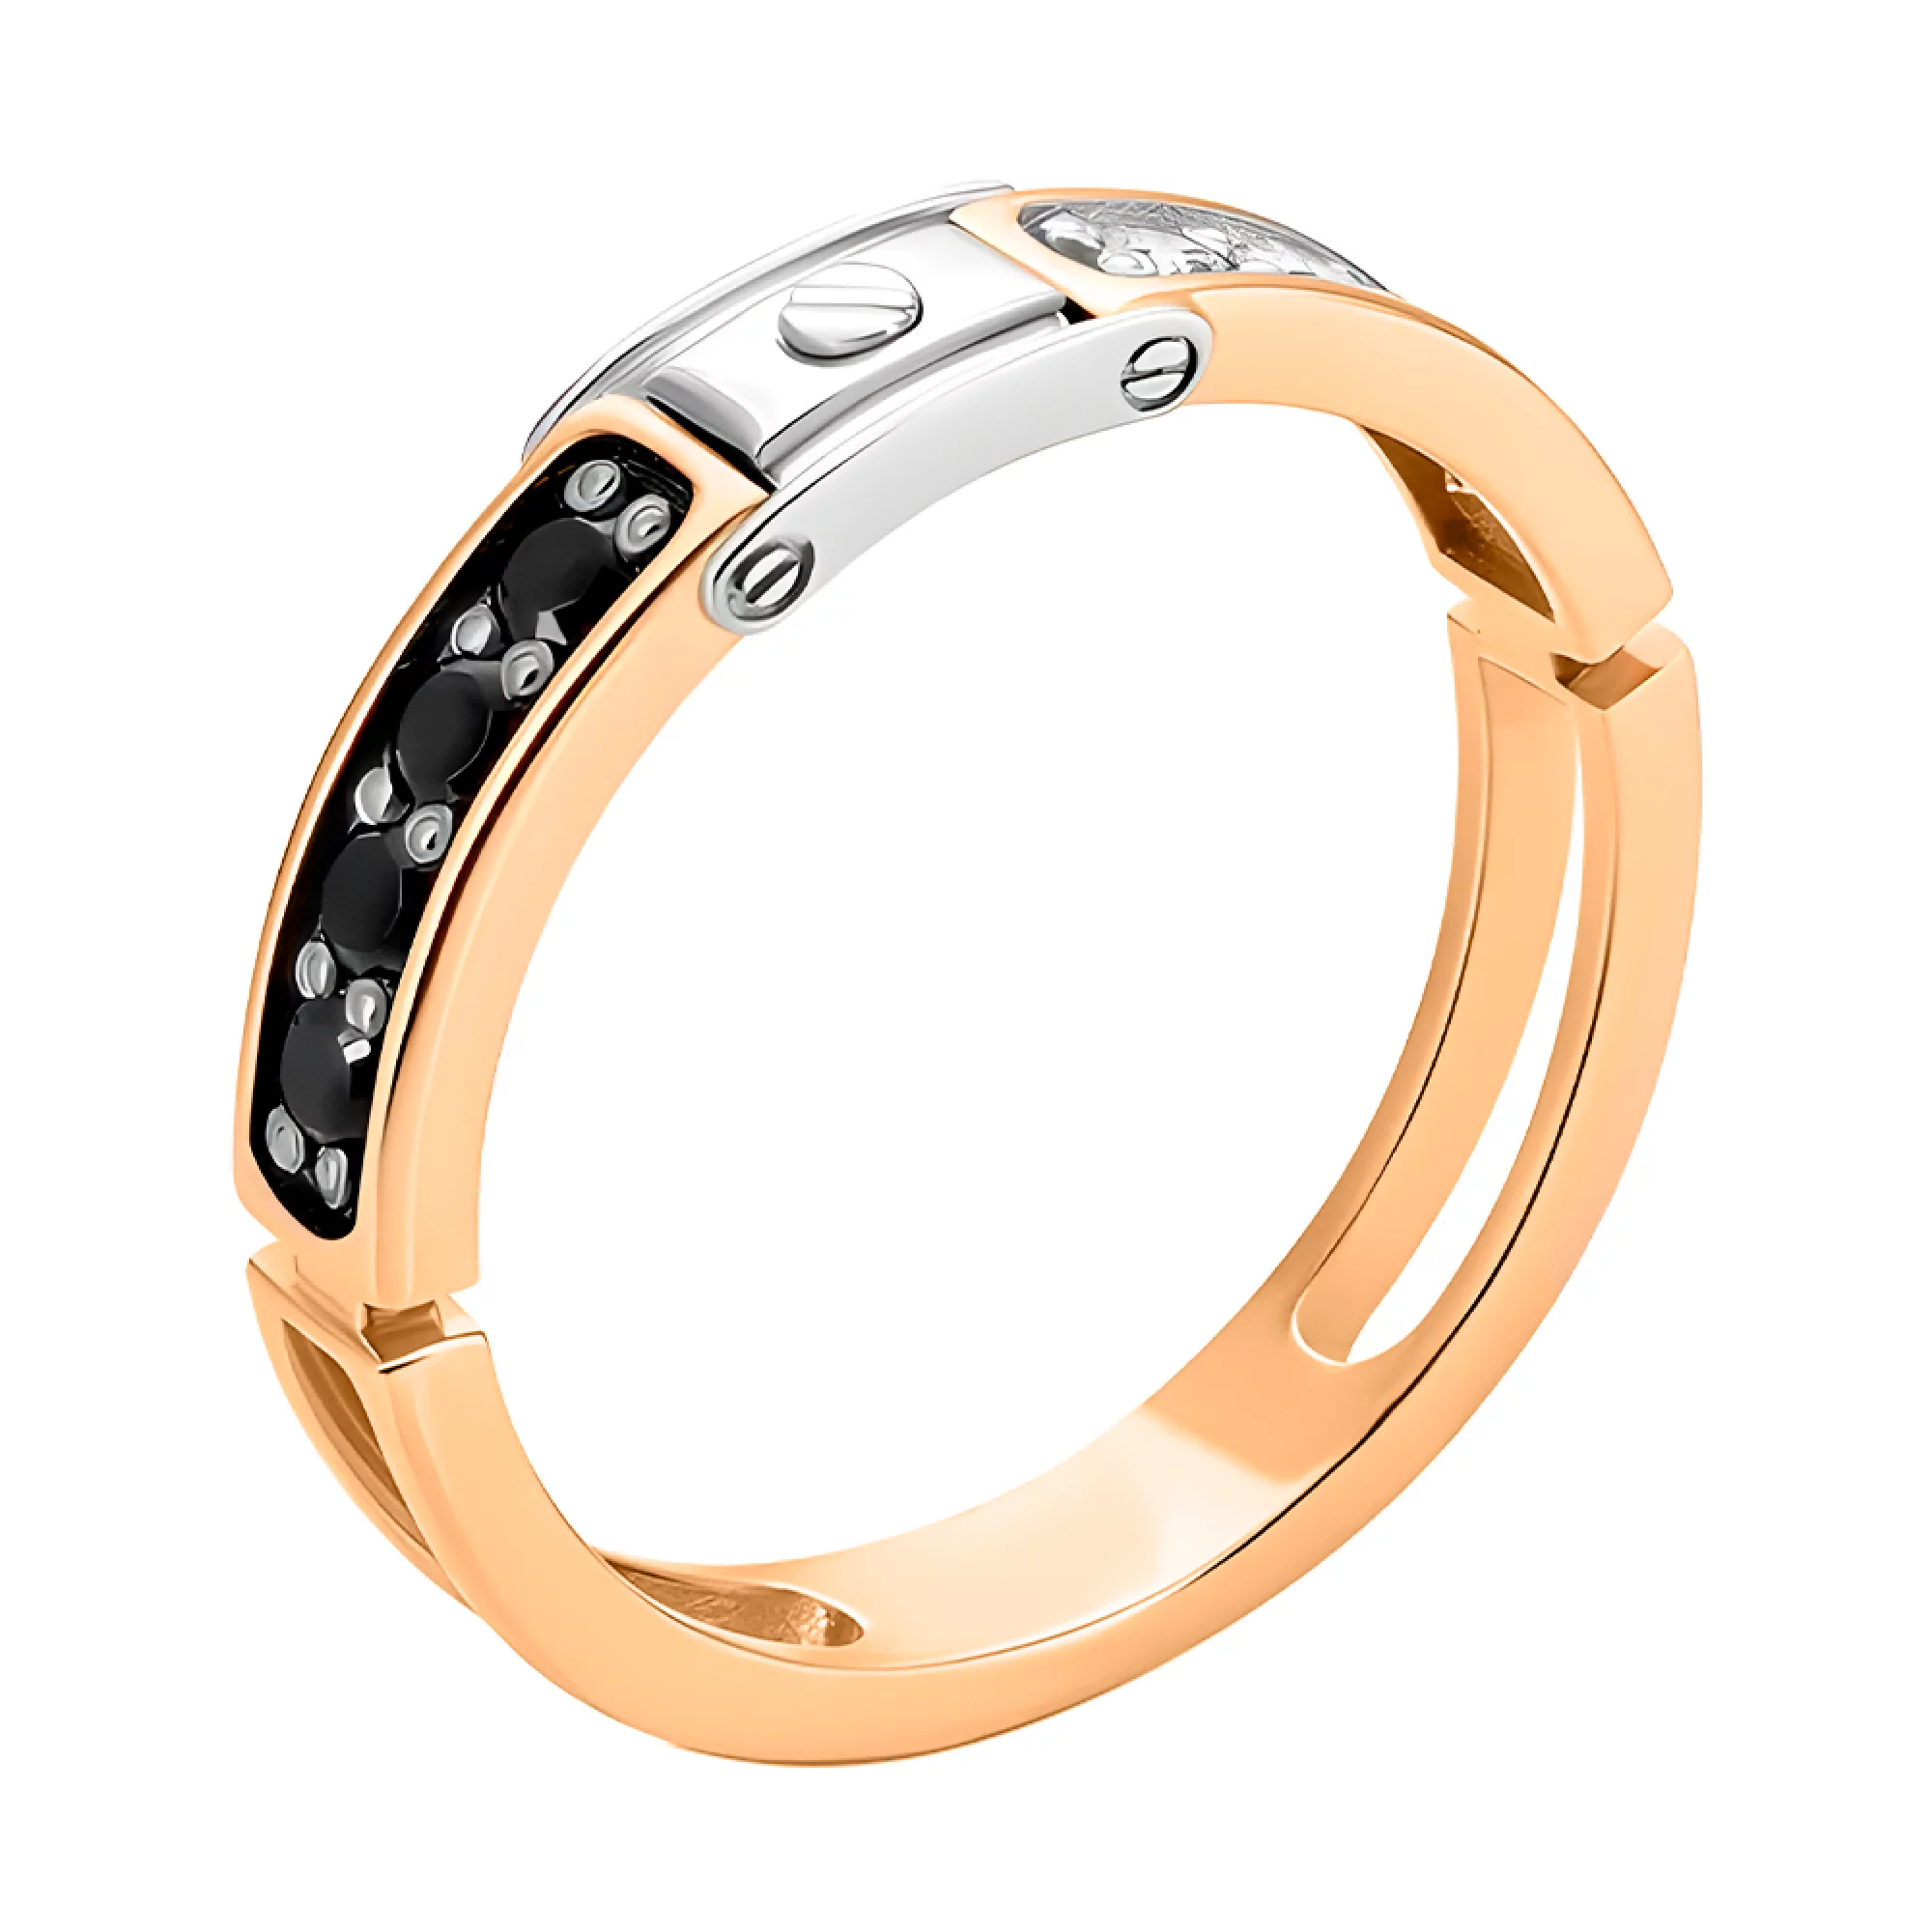 Перстень из комбинированного золота с фианитом - 1421886 – изображение 1